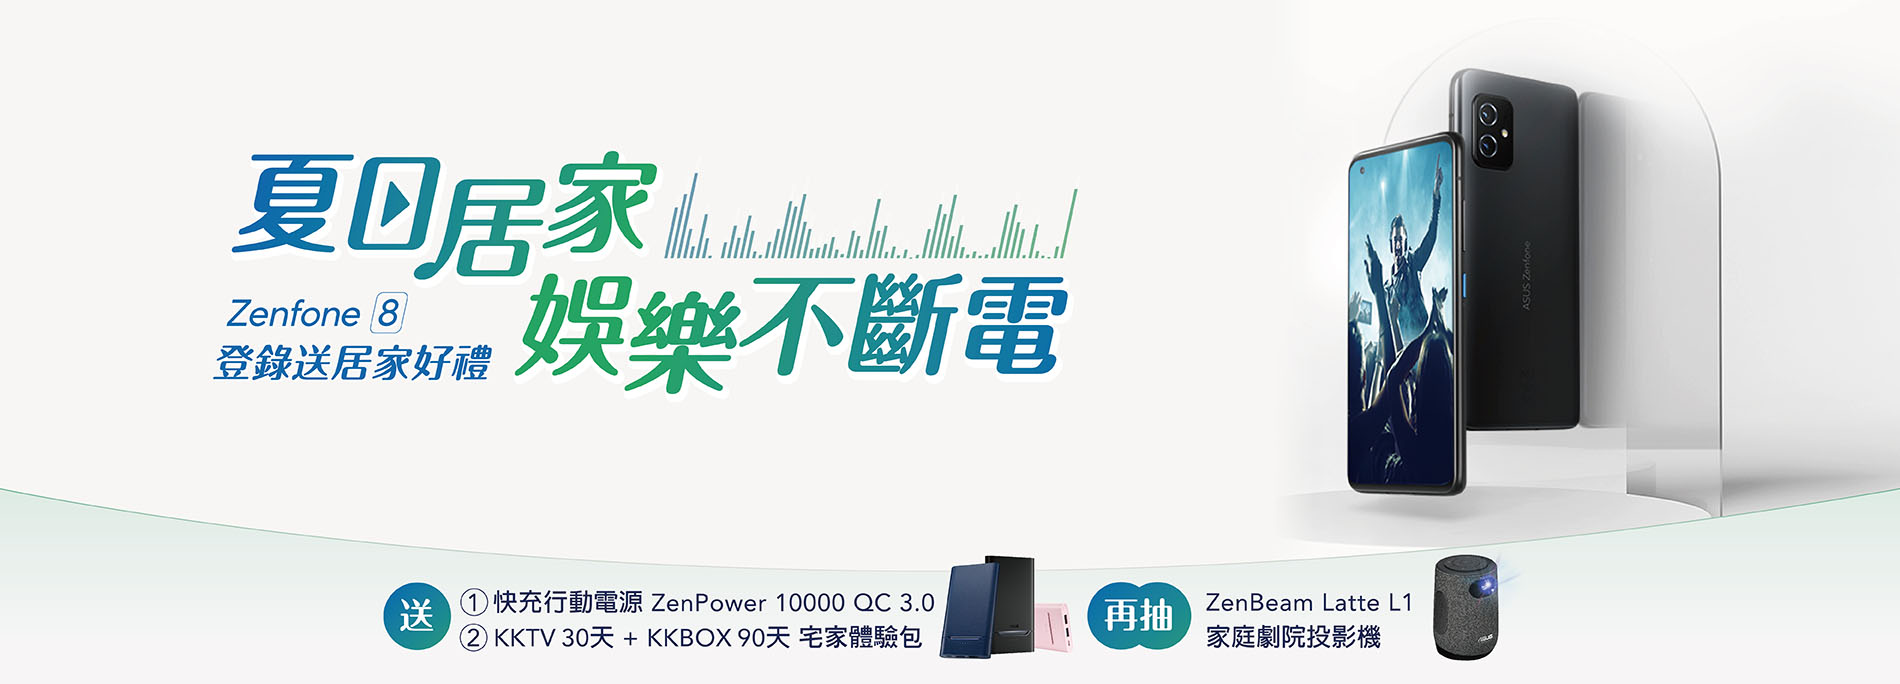 【登錄送好禮】全通路買 Zenfone 8 送快充行動電源 ZenPower 10000 QC 3.0，指定通路再加碼居家好禮！